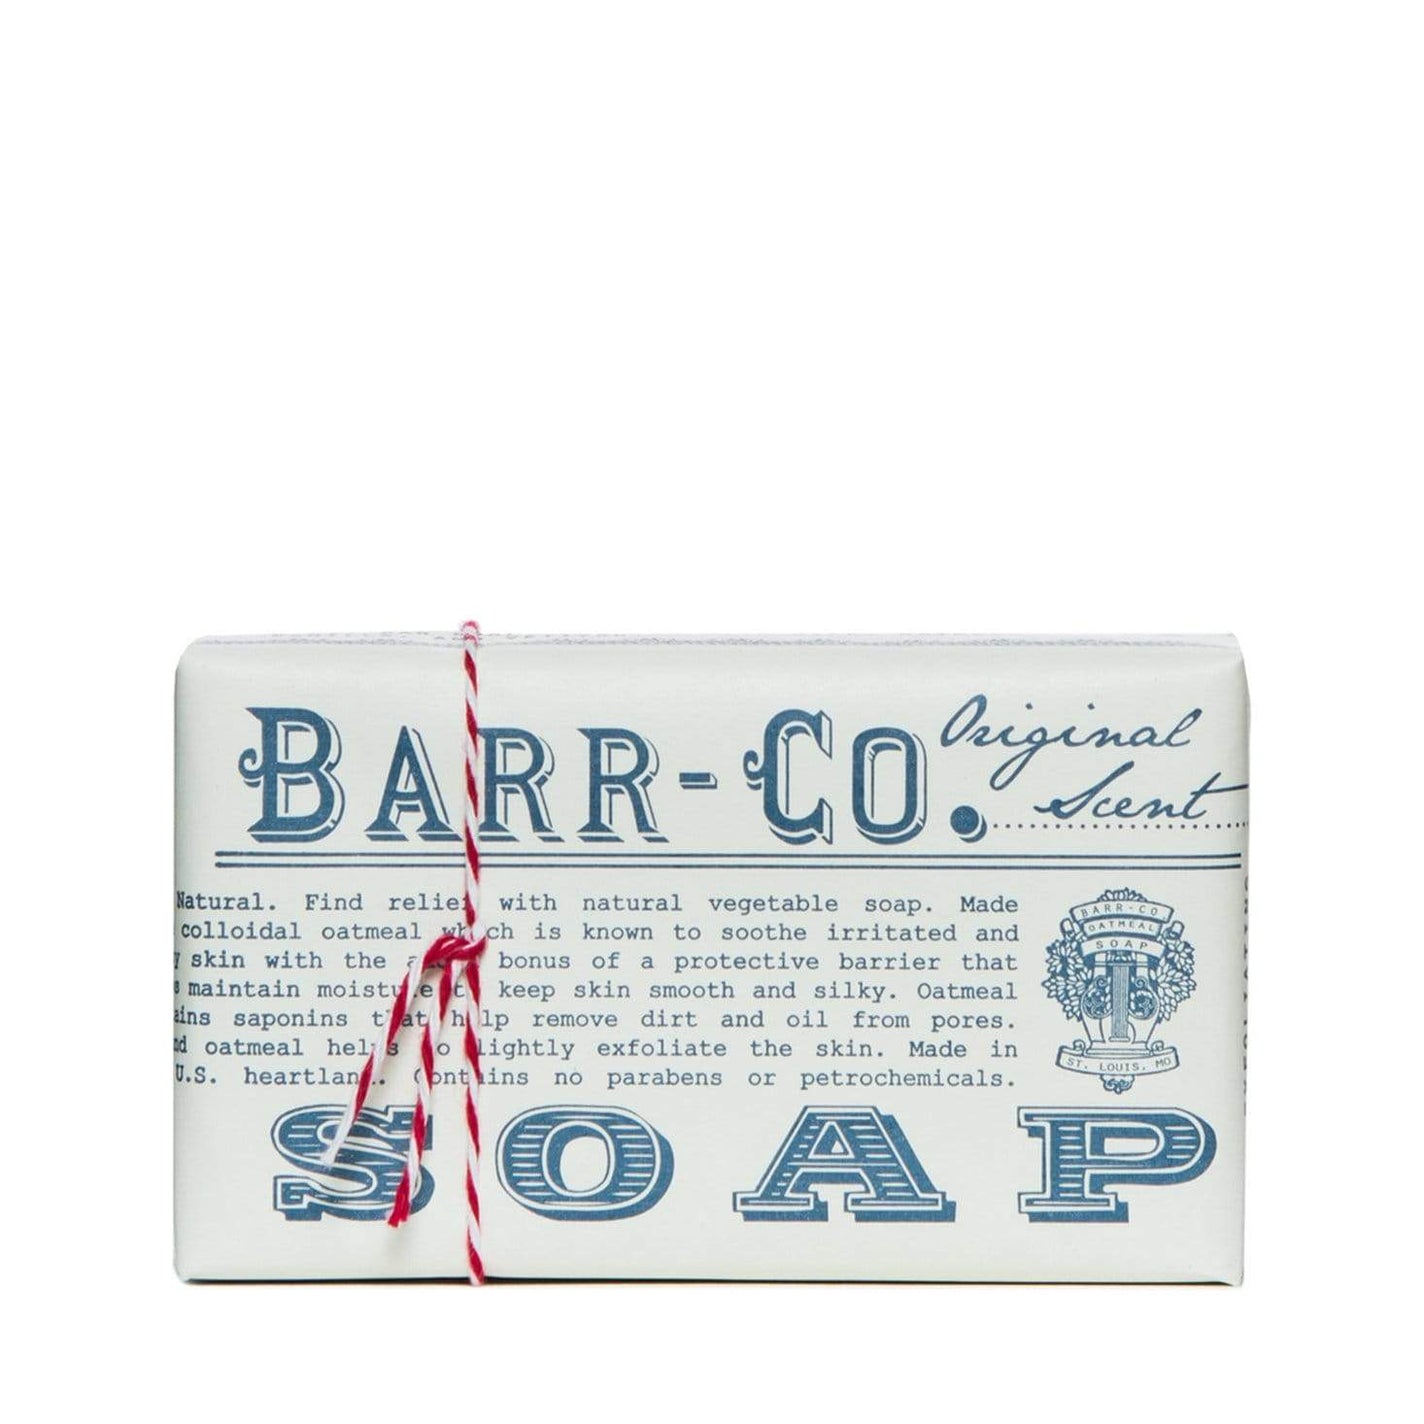 Barr-Co Original Soap